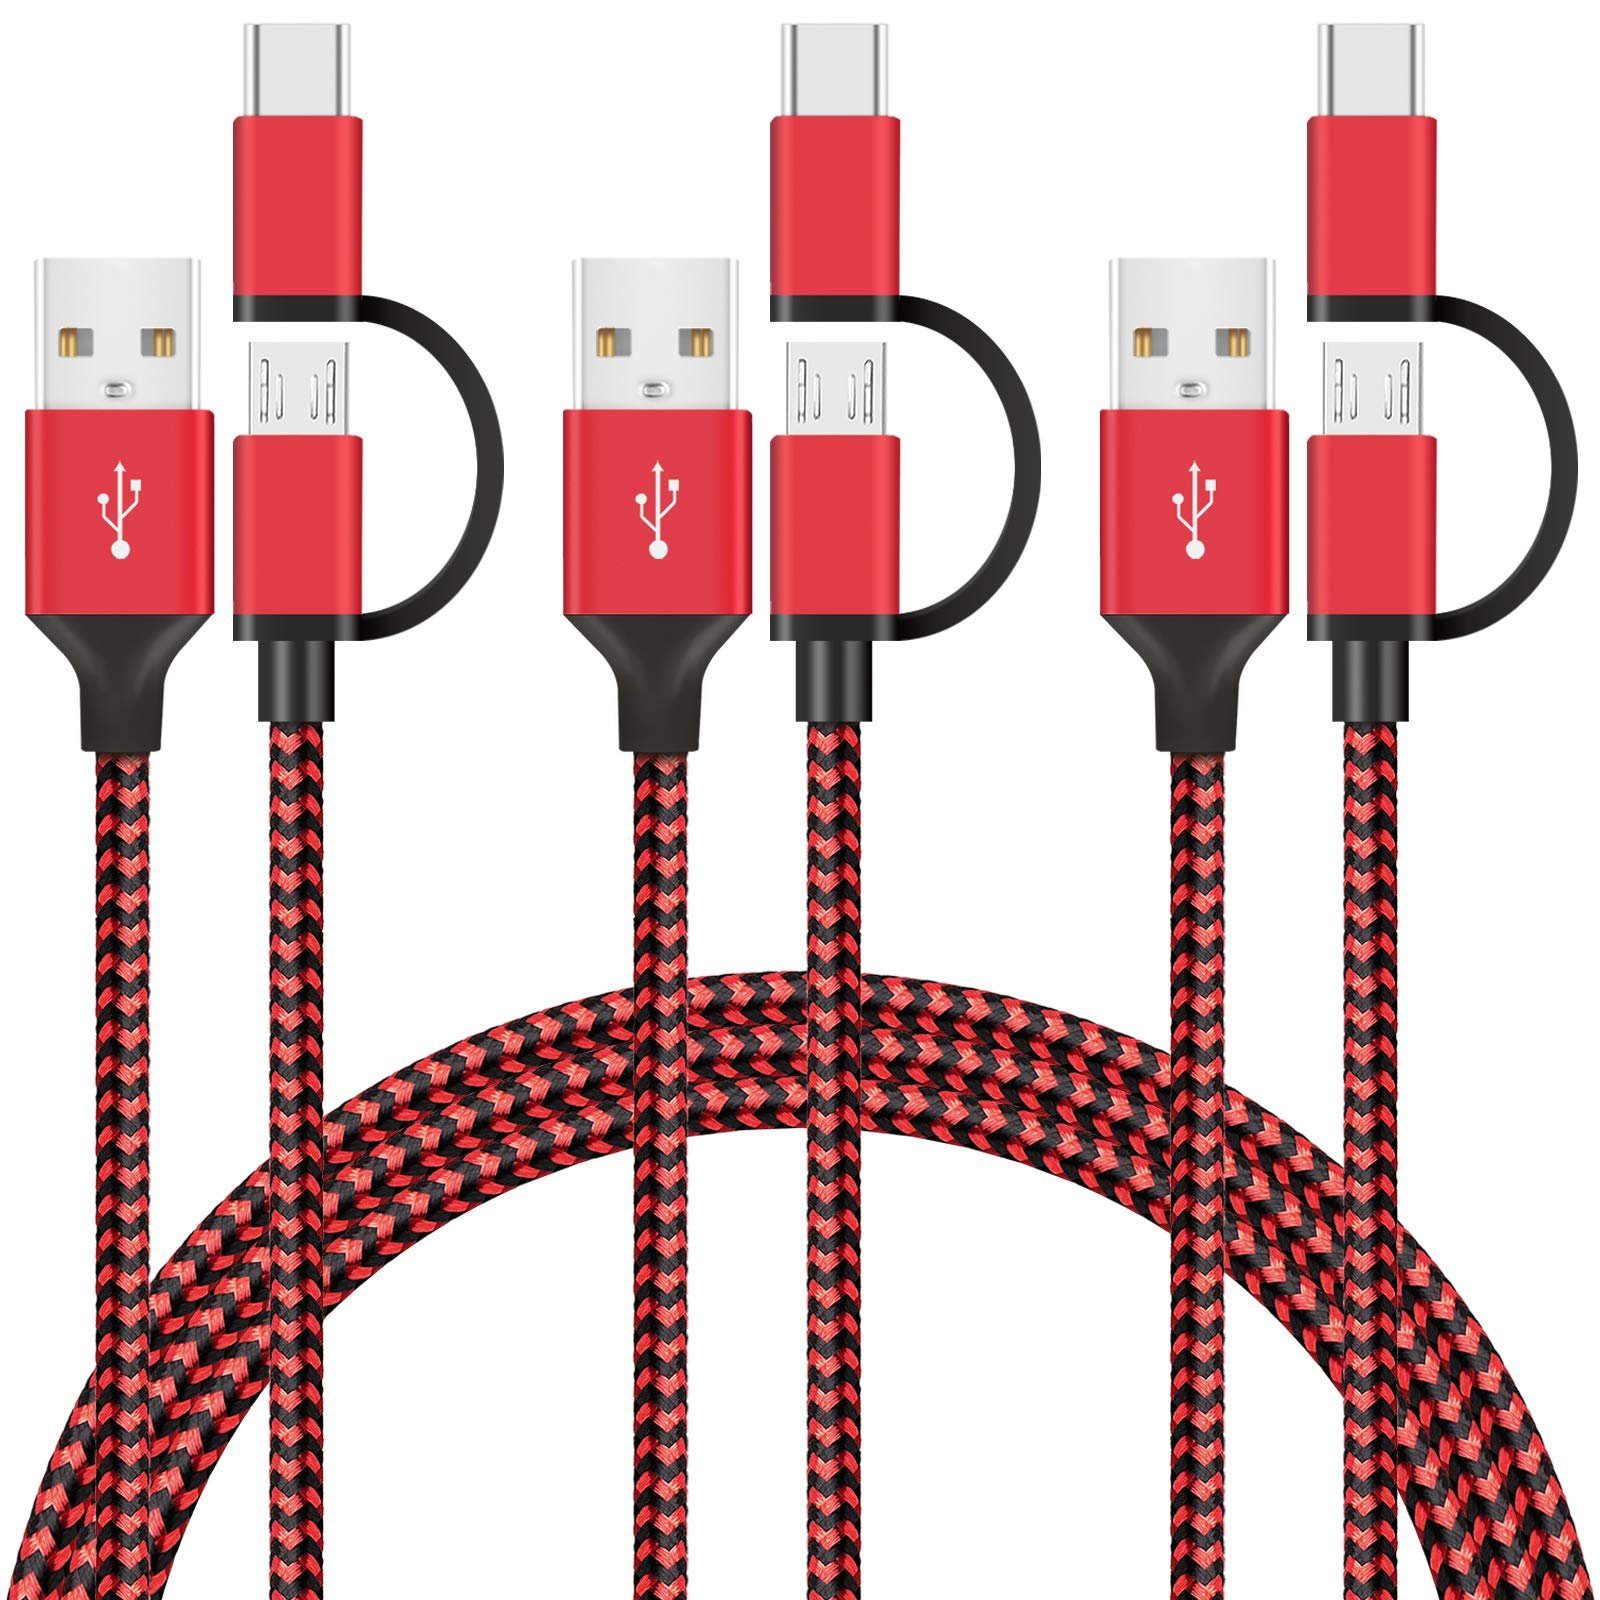 Avoalre »Avoalre Type C Kabel + Micro USB Kabel Multi USB Kabel 2 in 1  Mehrfach Ladekabel Nylon [1.5m 3 Stück] für Galaxy Note 8/S9/S9 Plus/S8/S8  Plus, LG, HTC und Alle Typ